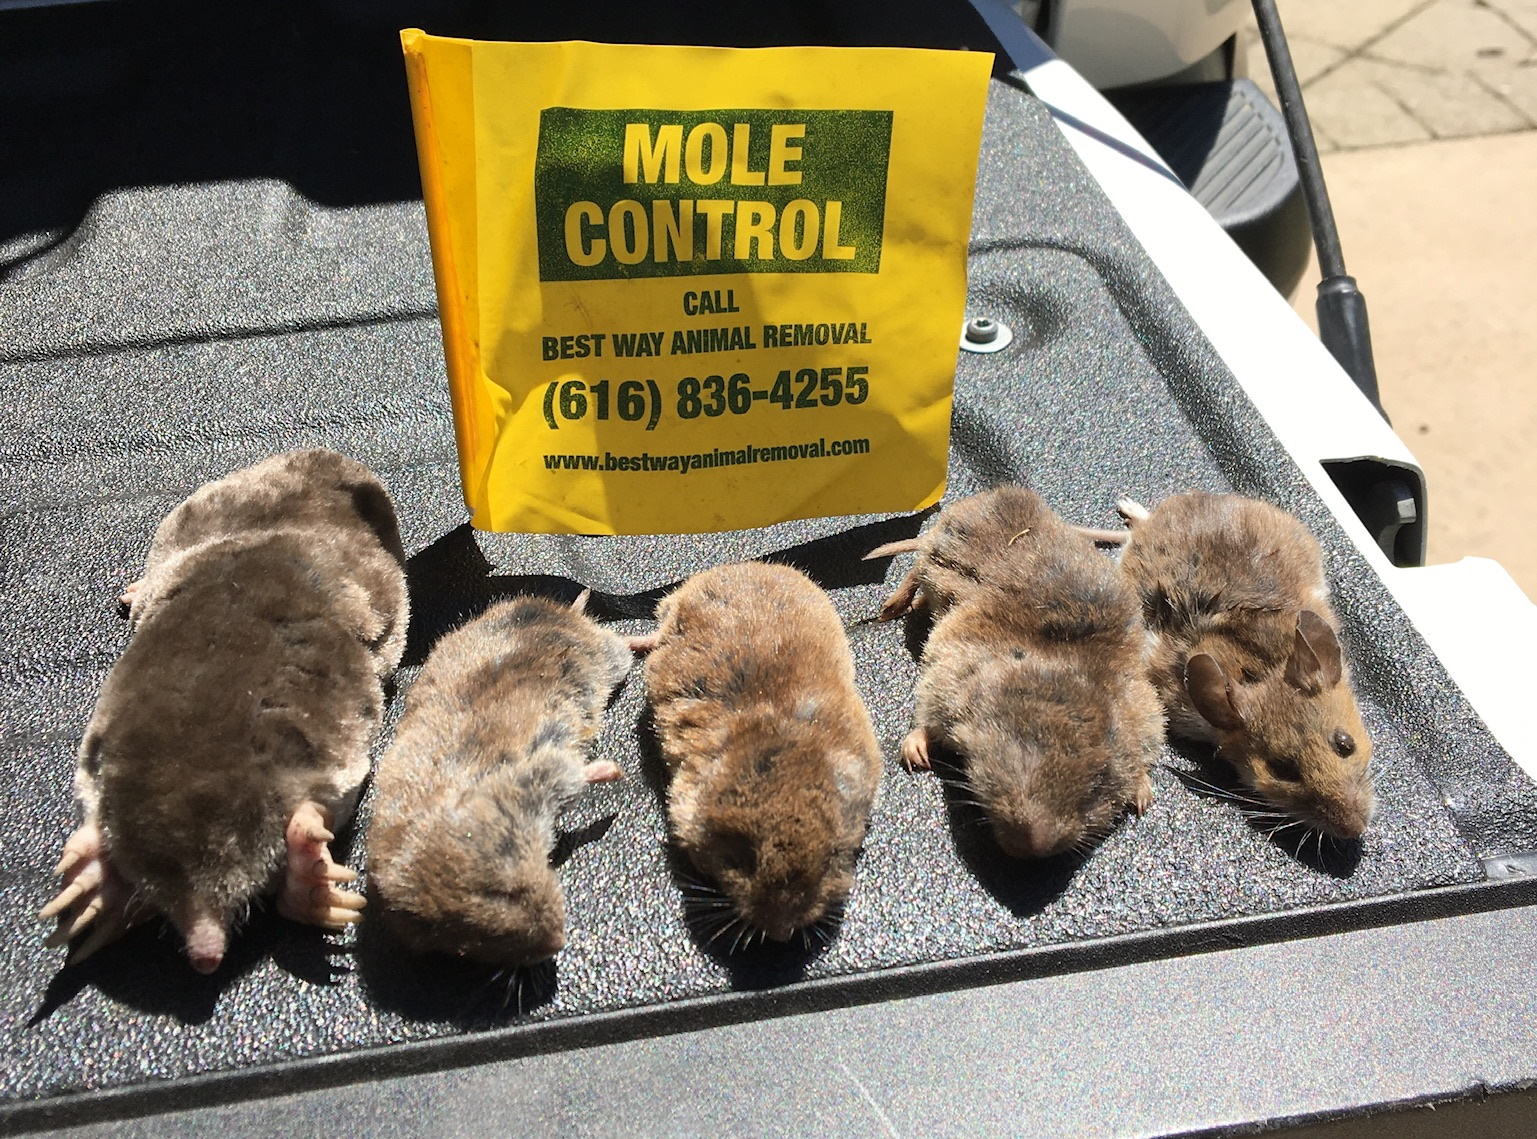 Vriesland mole control services